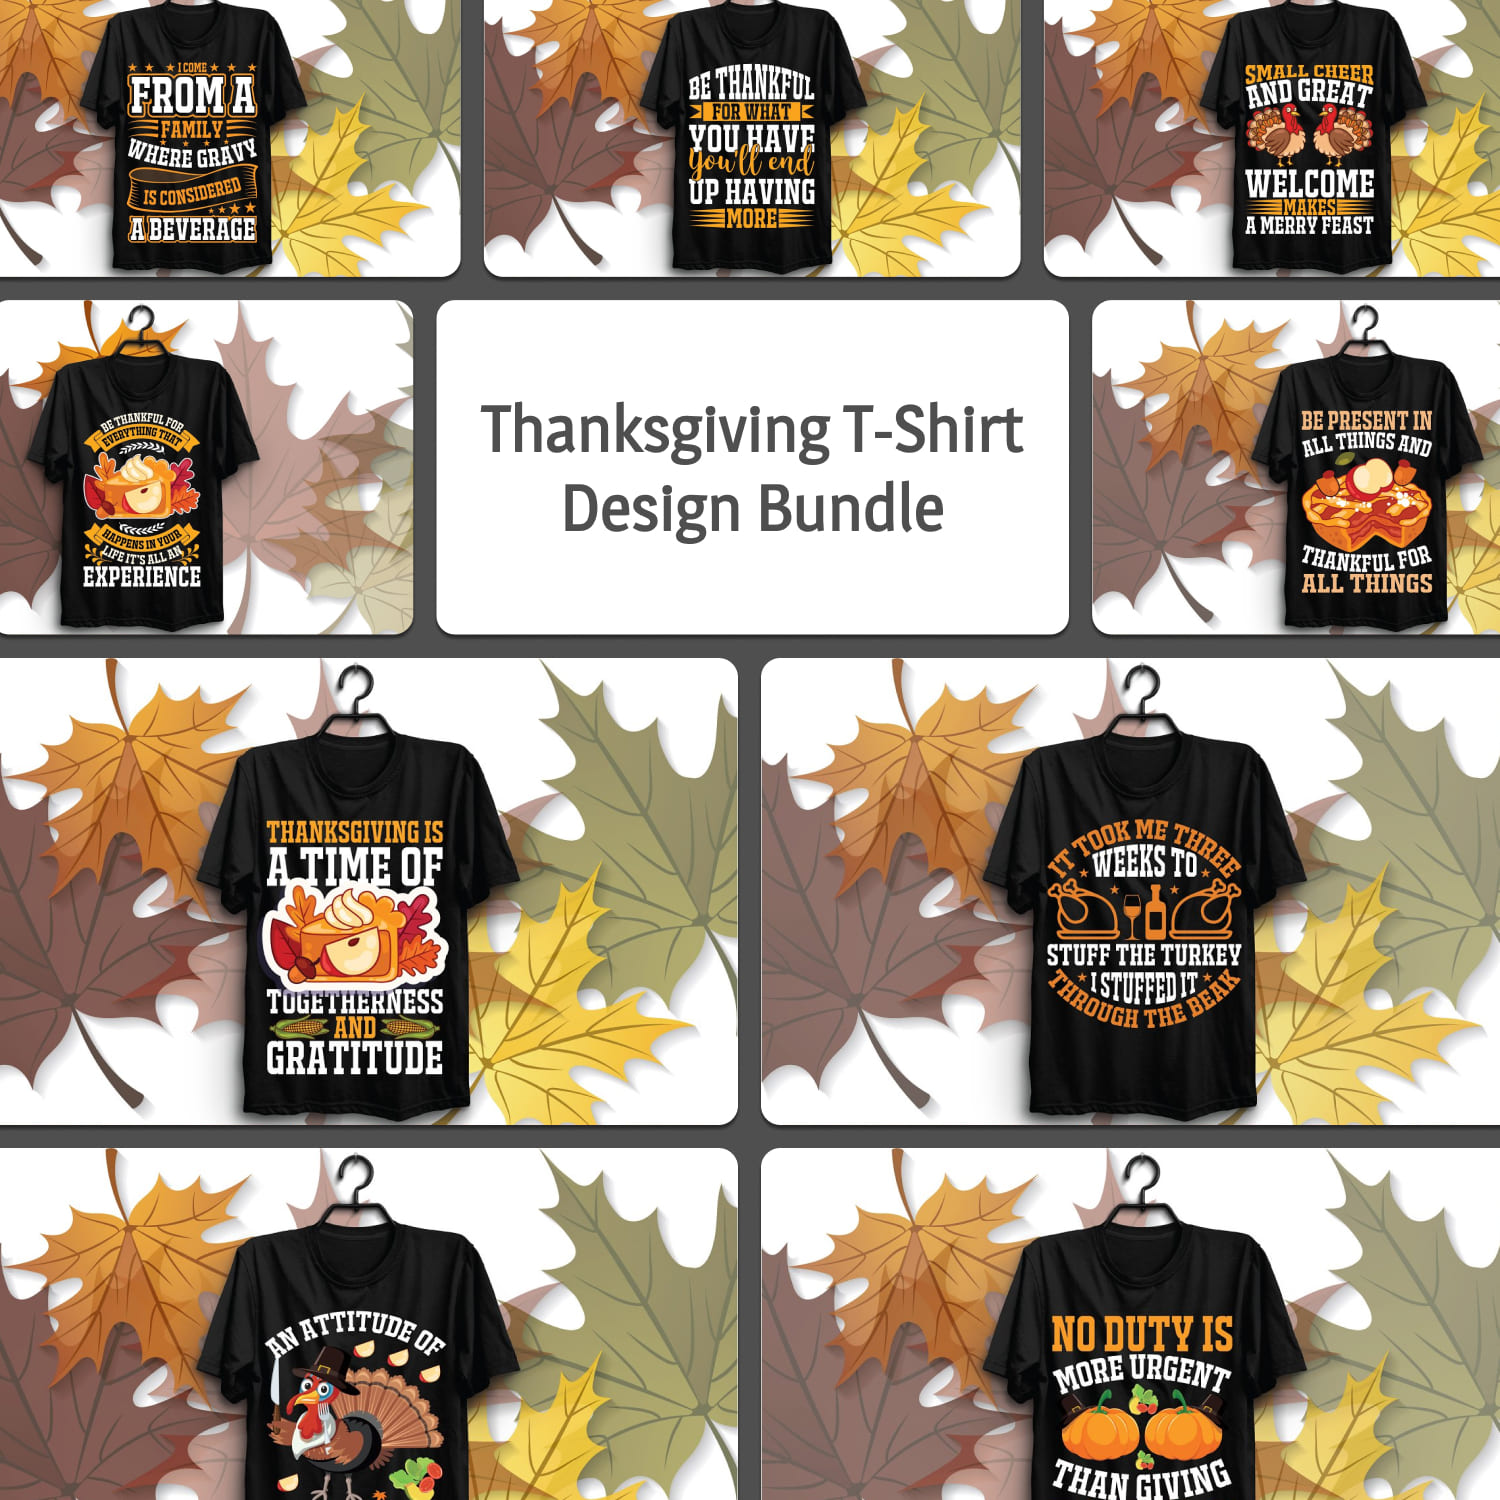 Thanksgiving t-shirt design bundle.